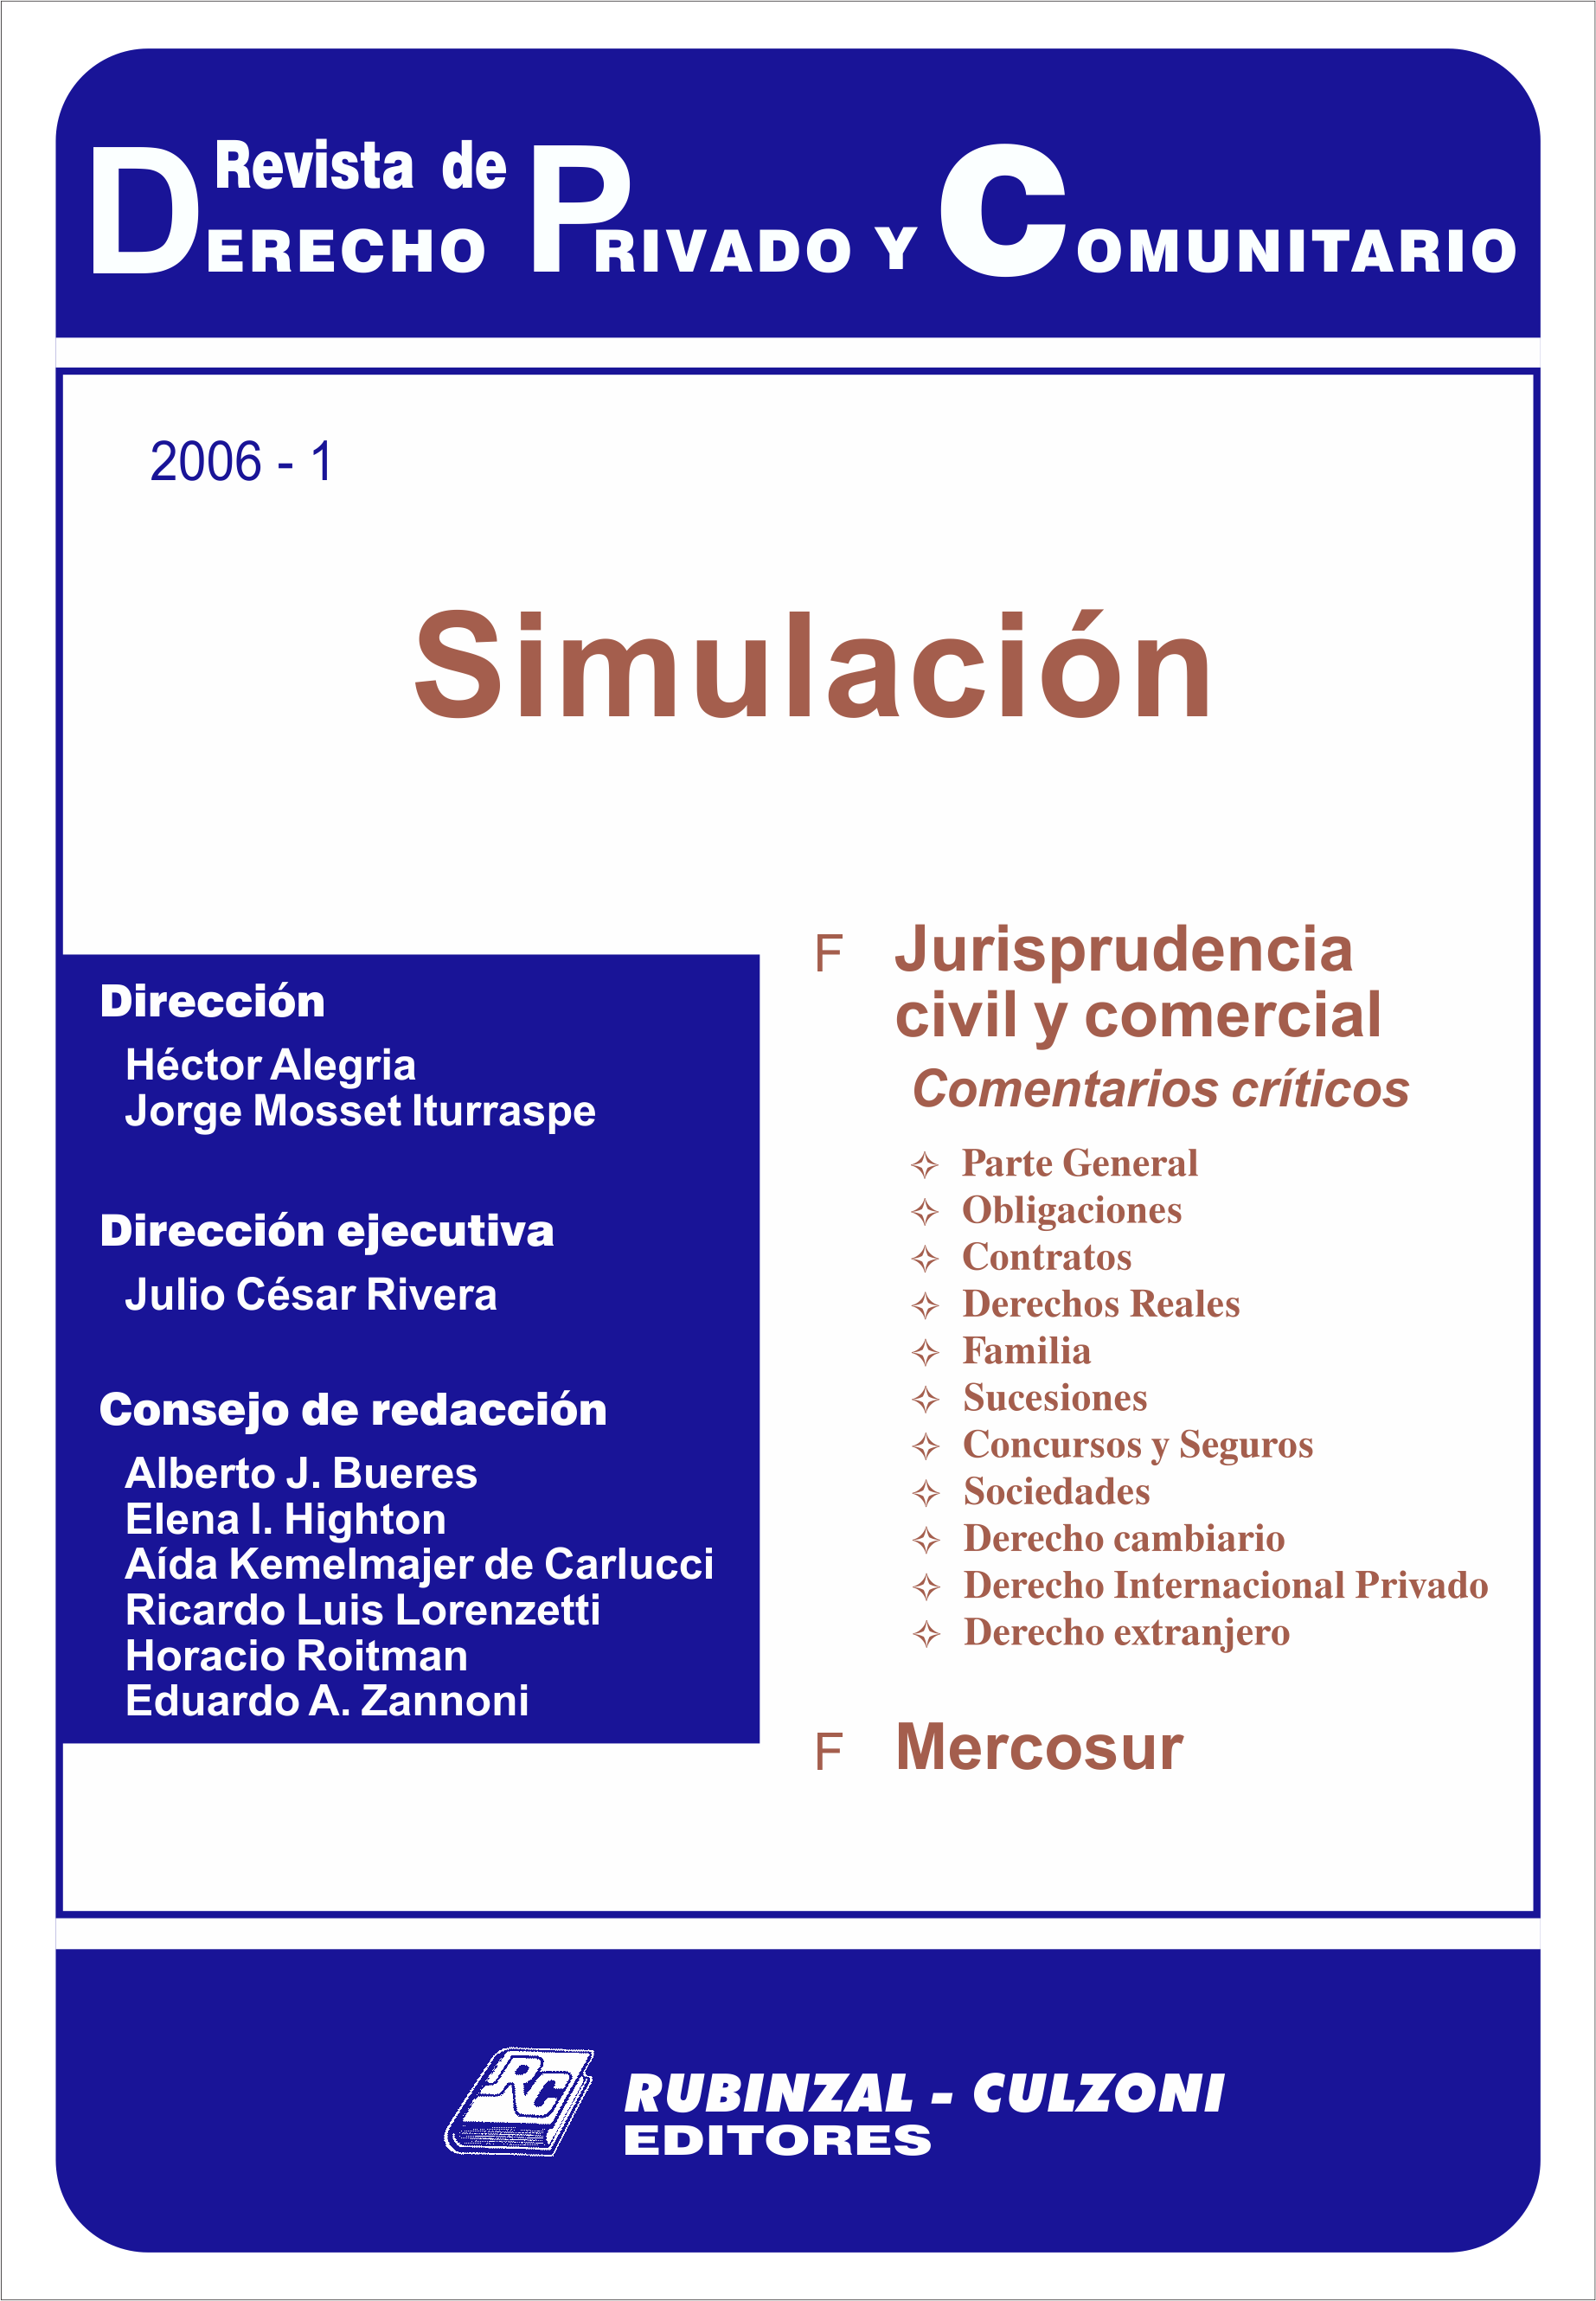 Revista de Derecho Privado y Comunitario - Simulación.